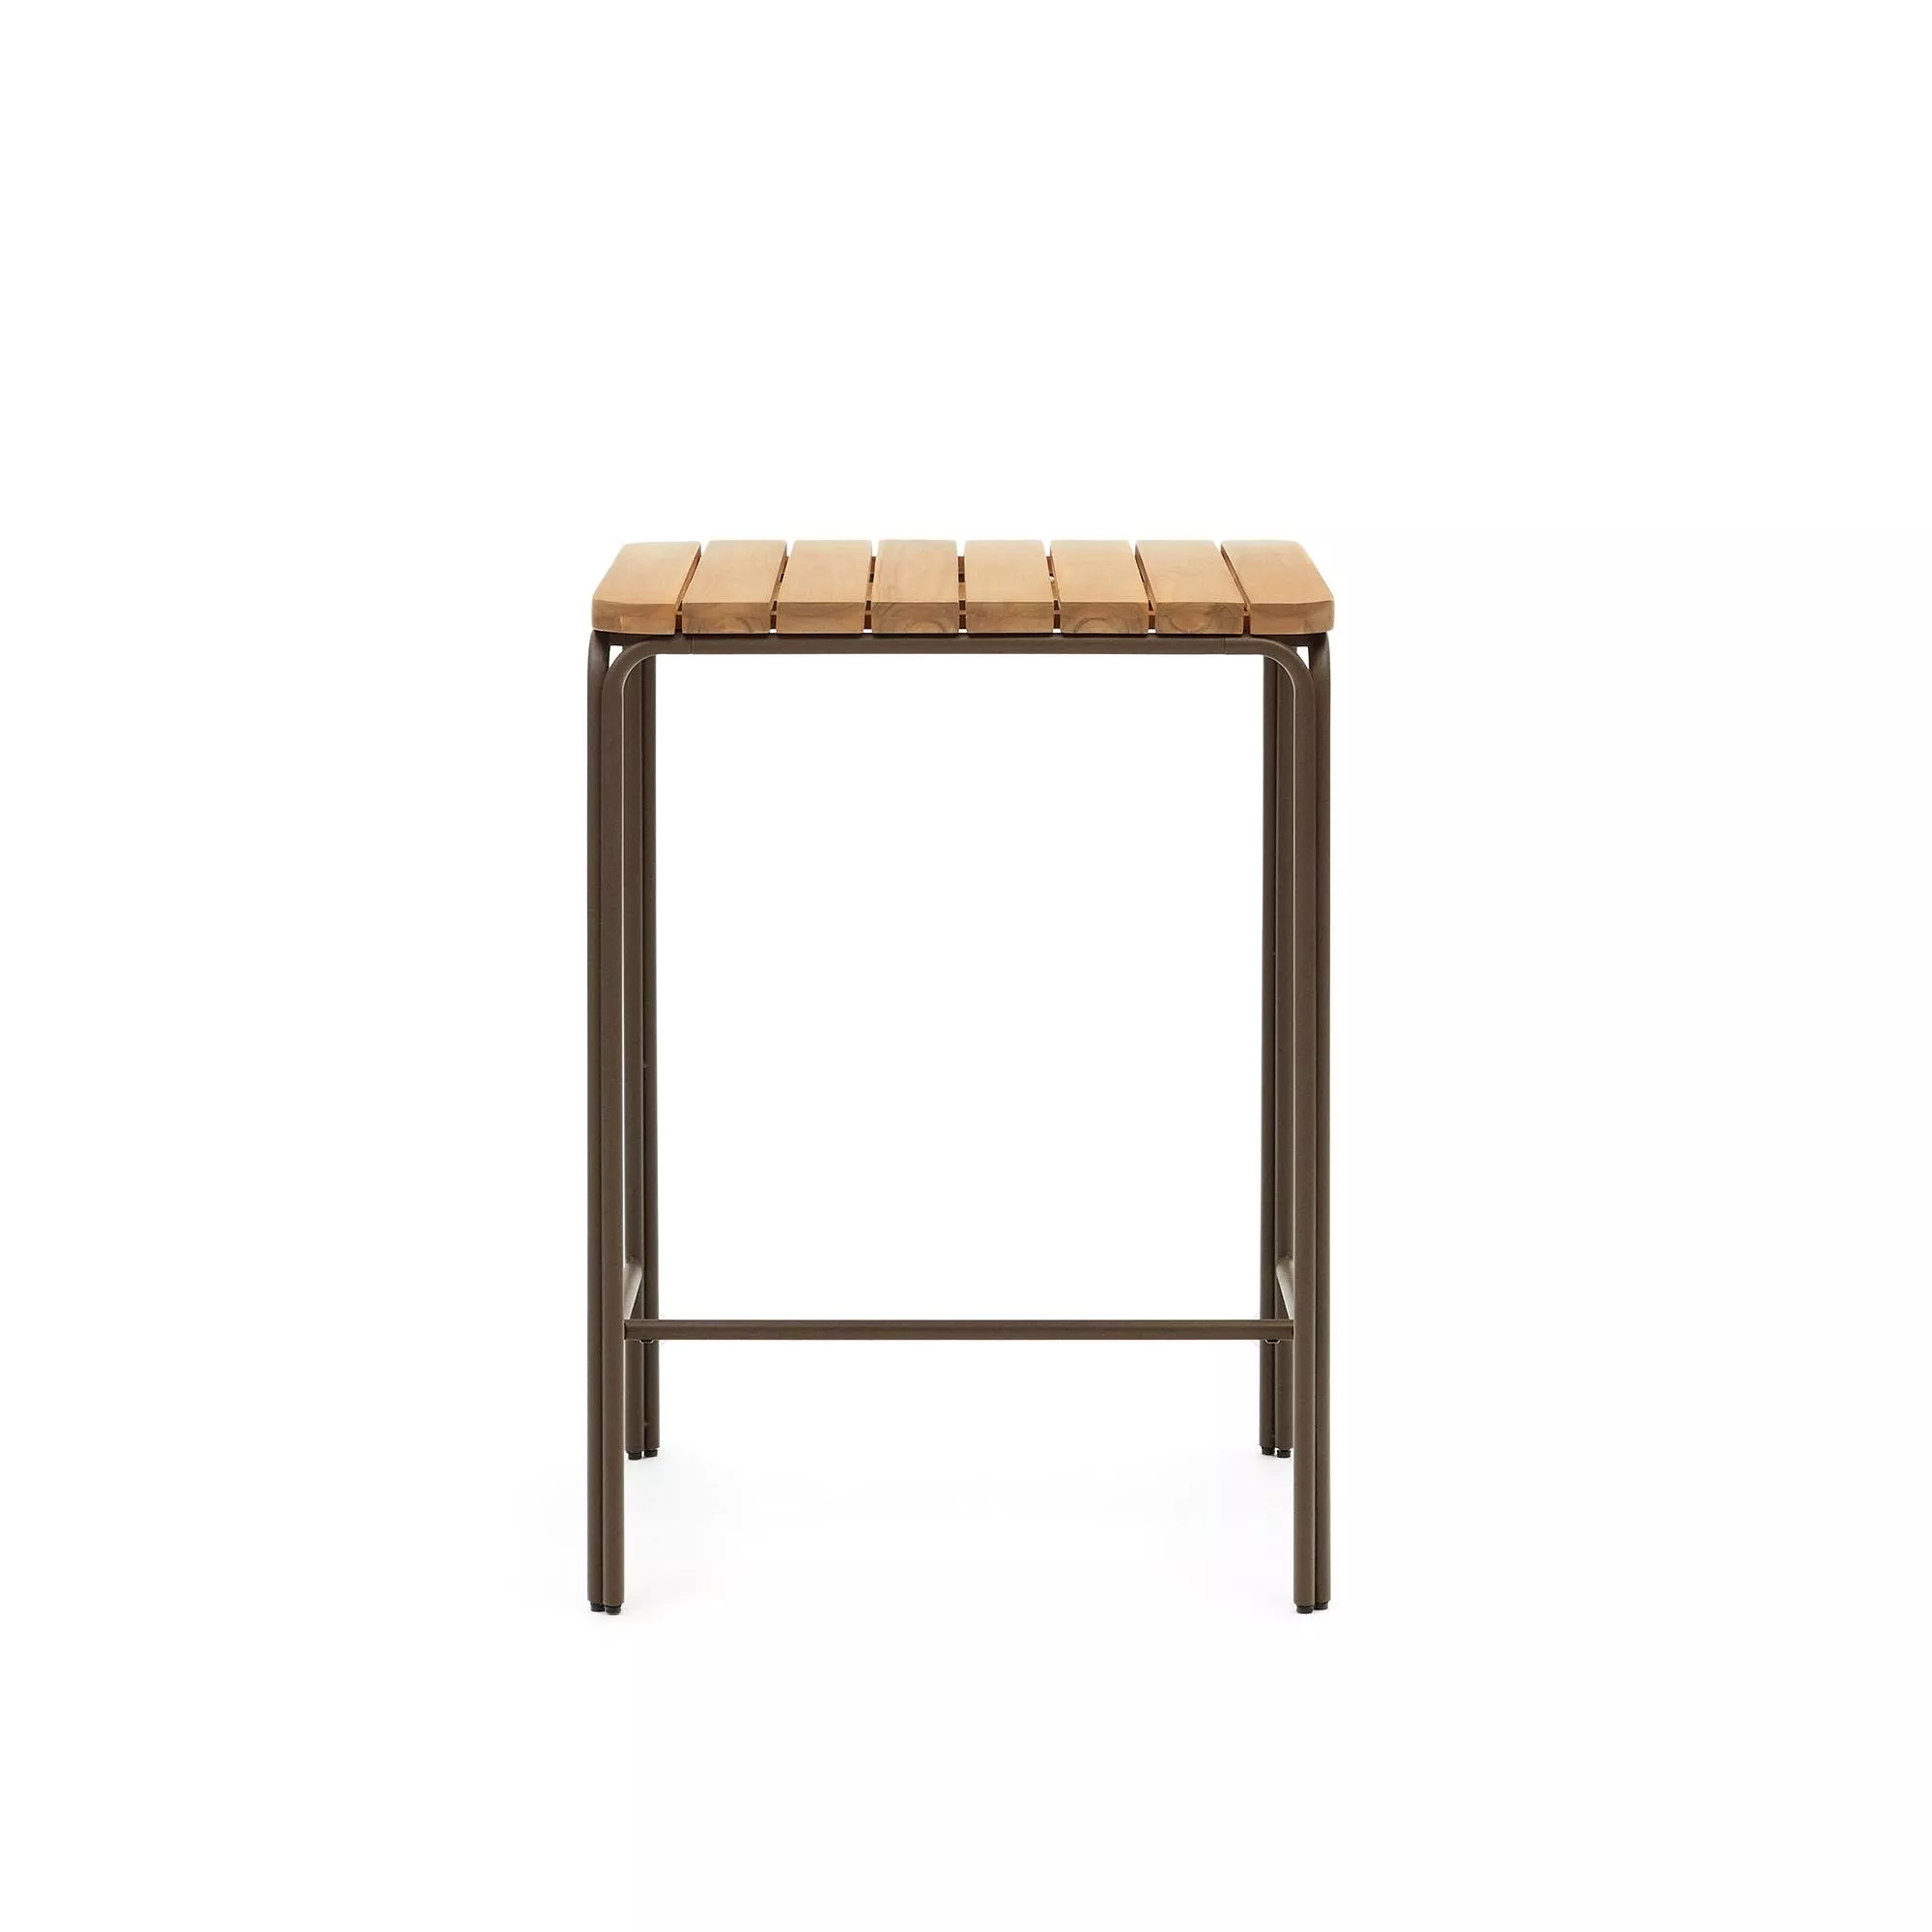 Барный столик La Forma Salguer массив акации и коричневая сталь 70 x 70 см